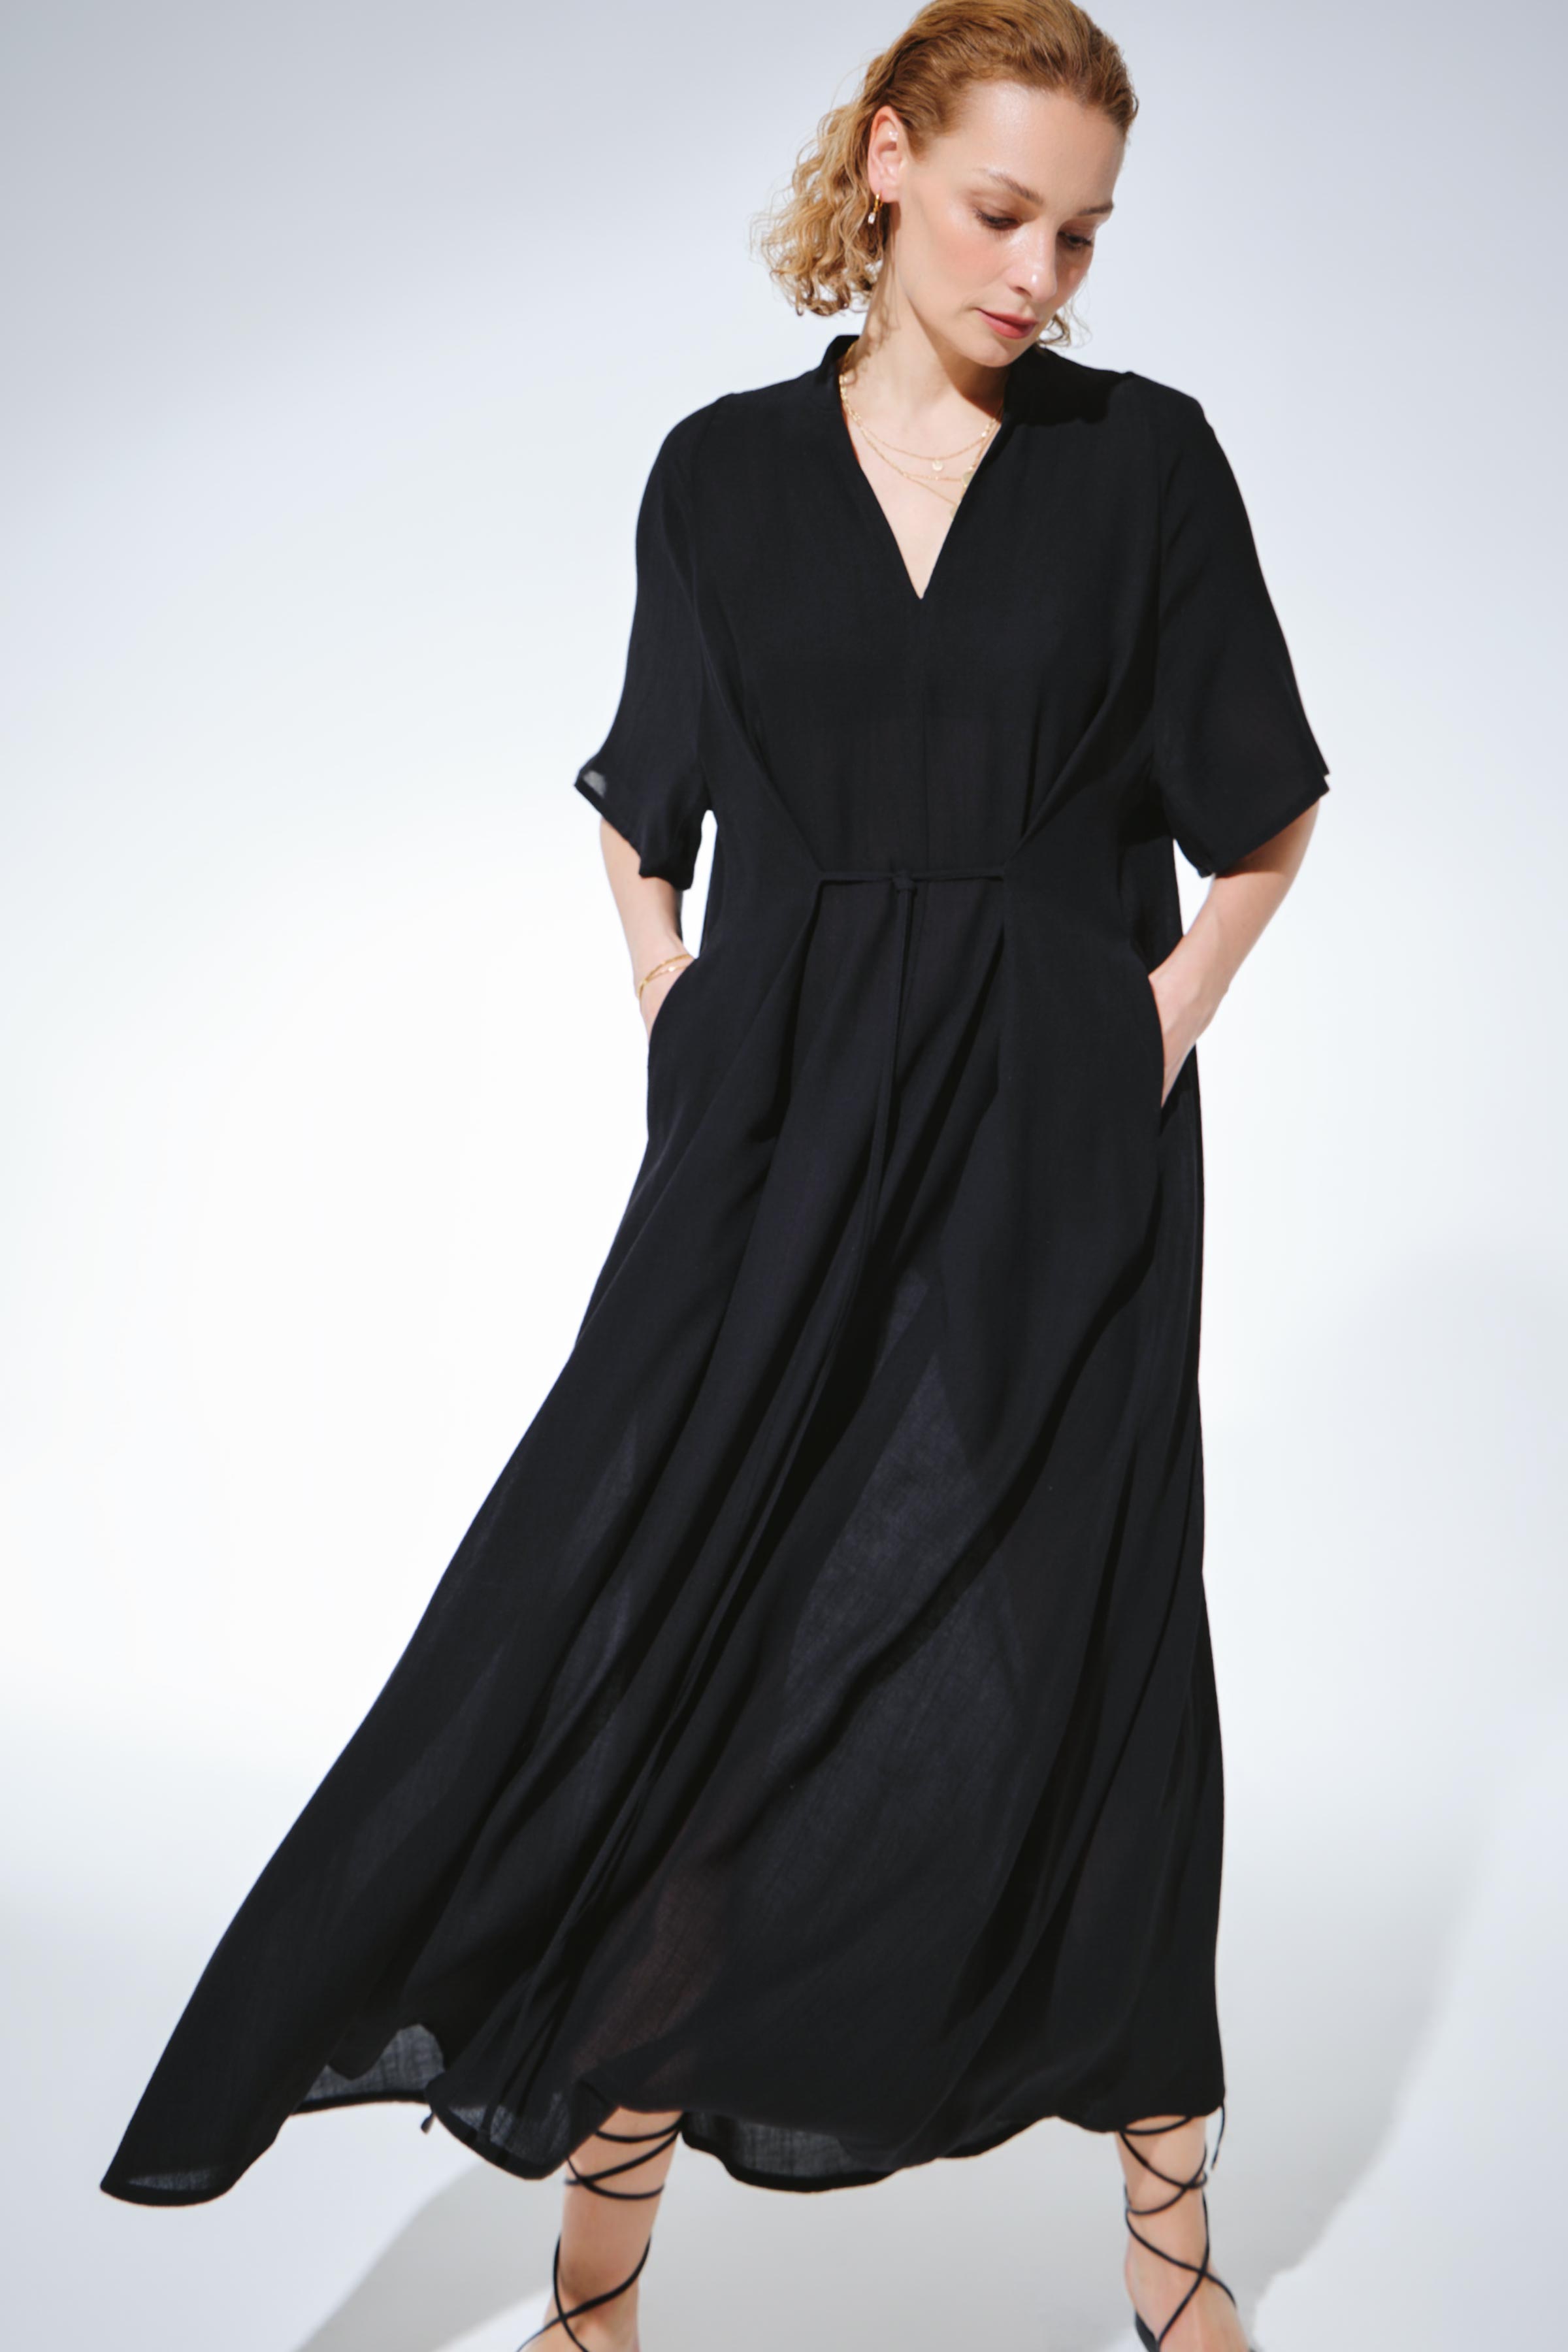 Платье Реглан, завязки, креп 00 Черный (noir) от Lesel (Лесель)! Заказывайте по ✆ 8 (800) 777 02 37